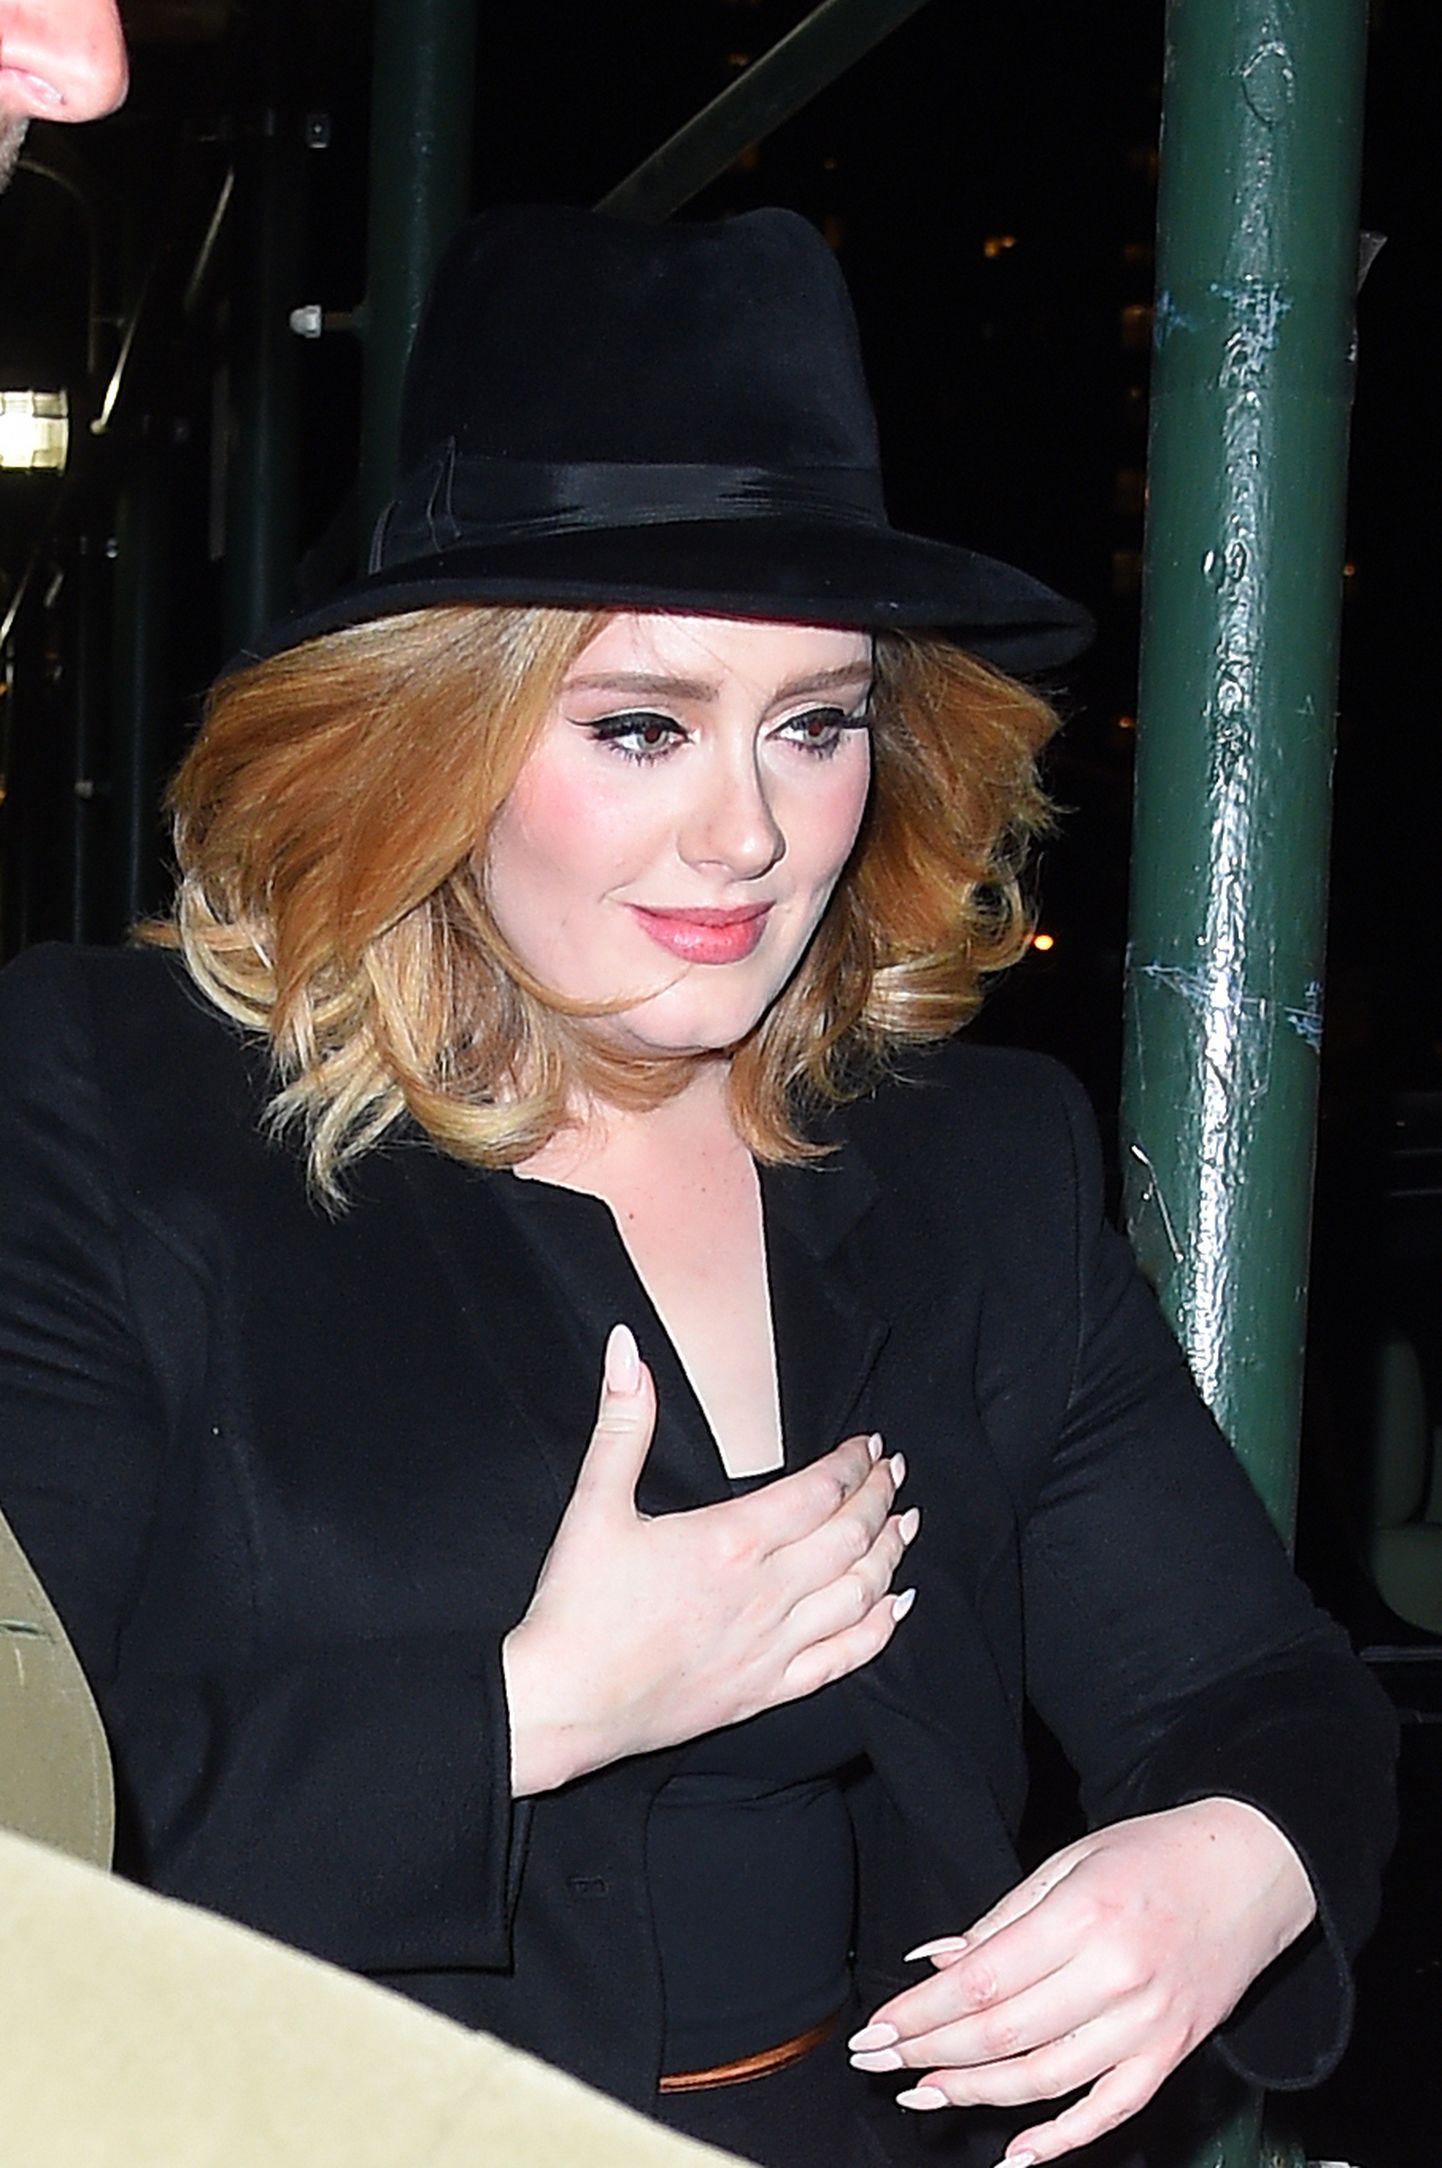 Adele näitas oma kaunist kurvikat figuuri ja head stiilitunnetust